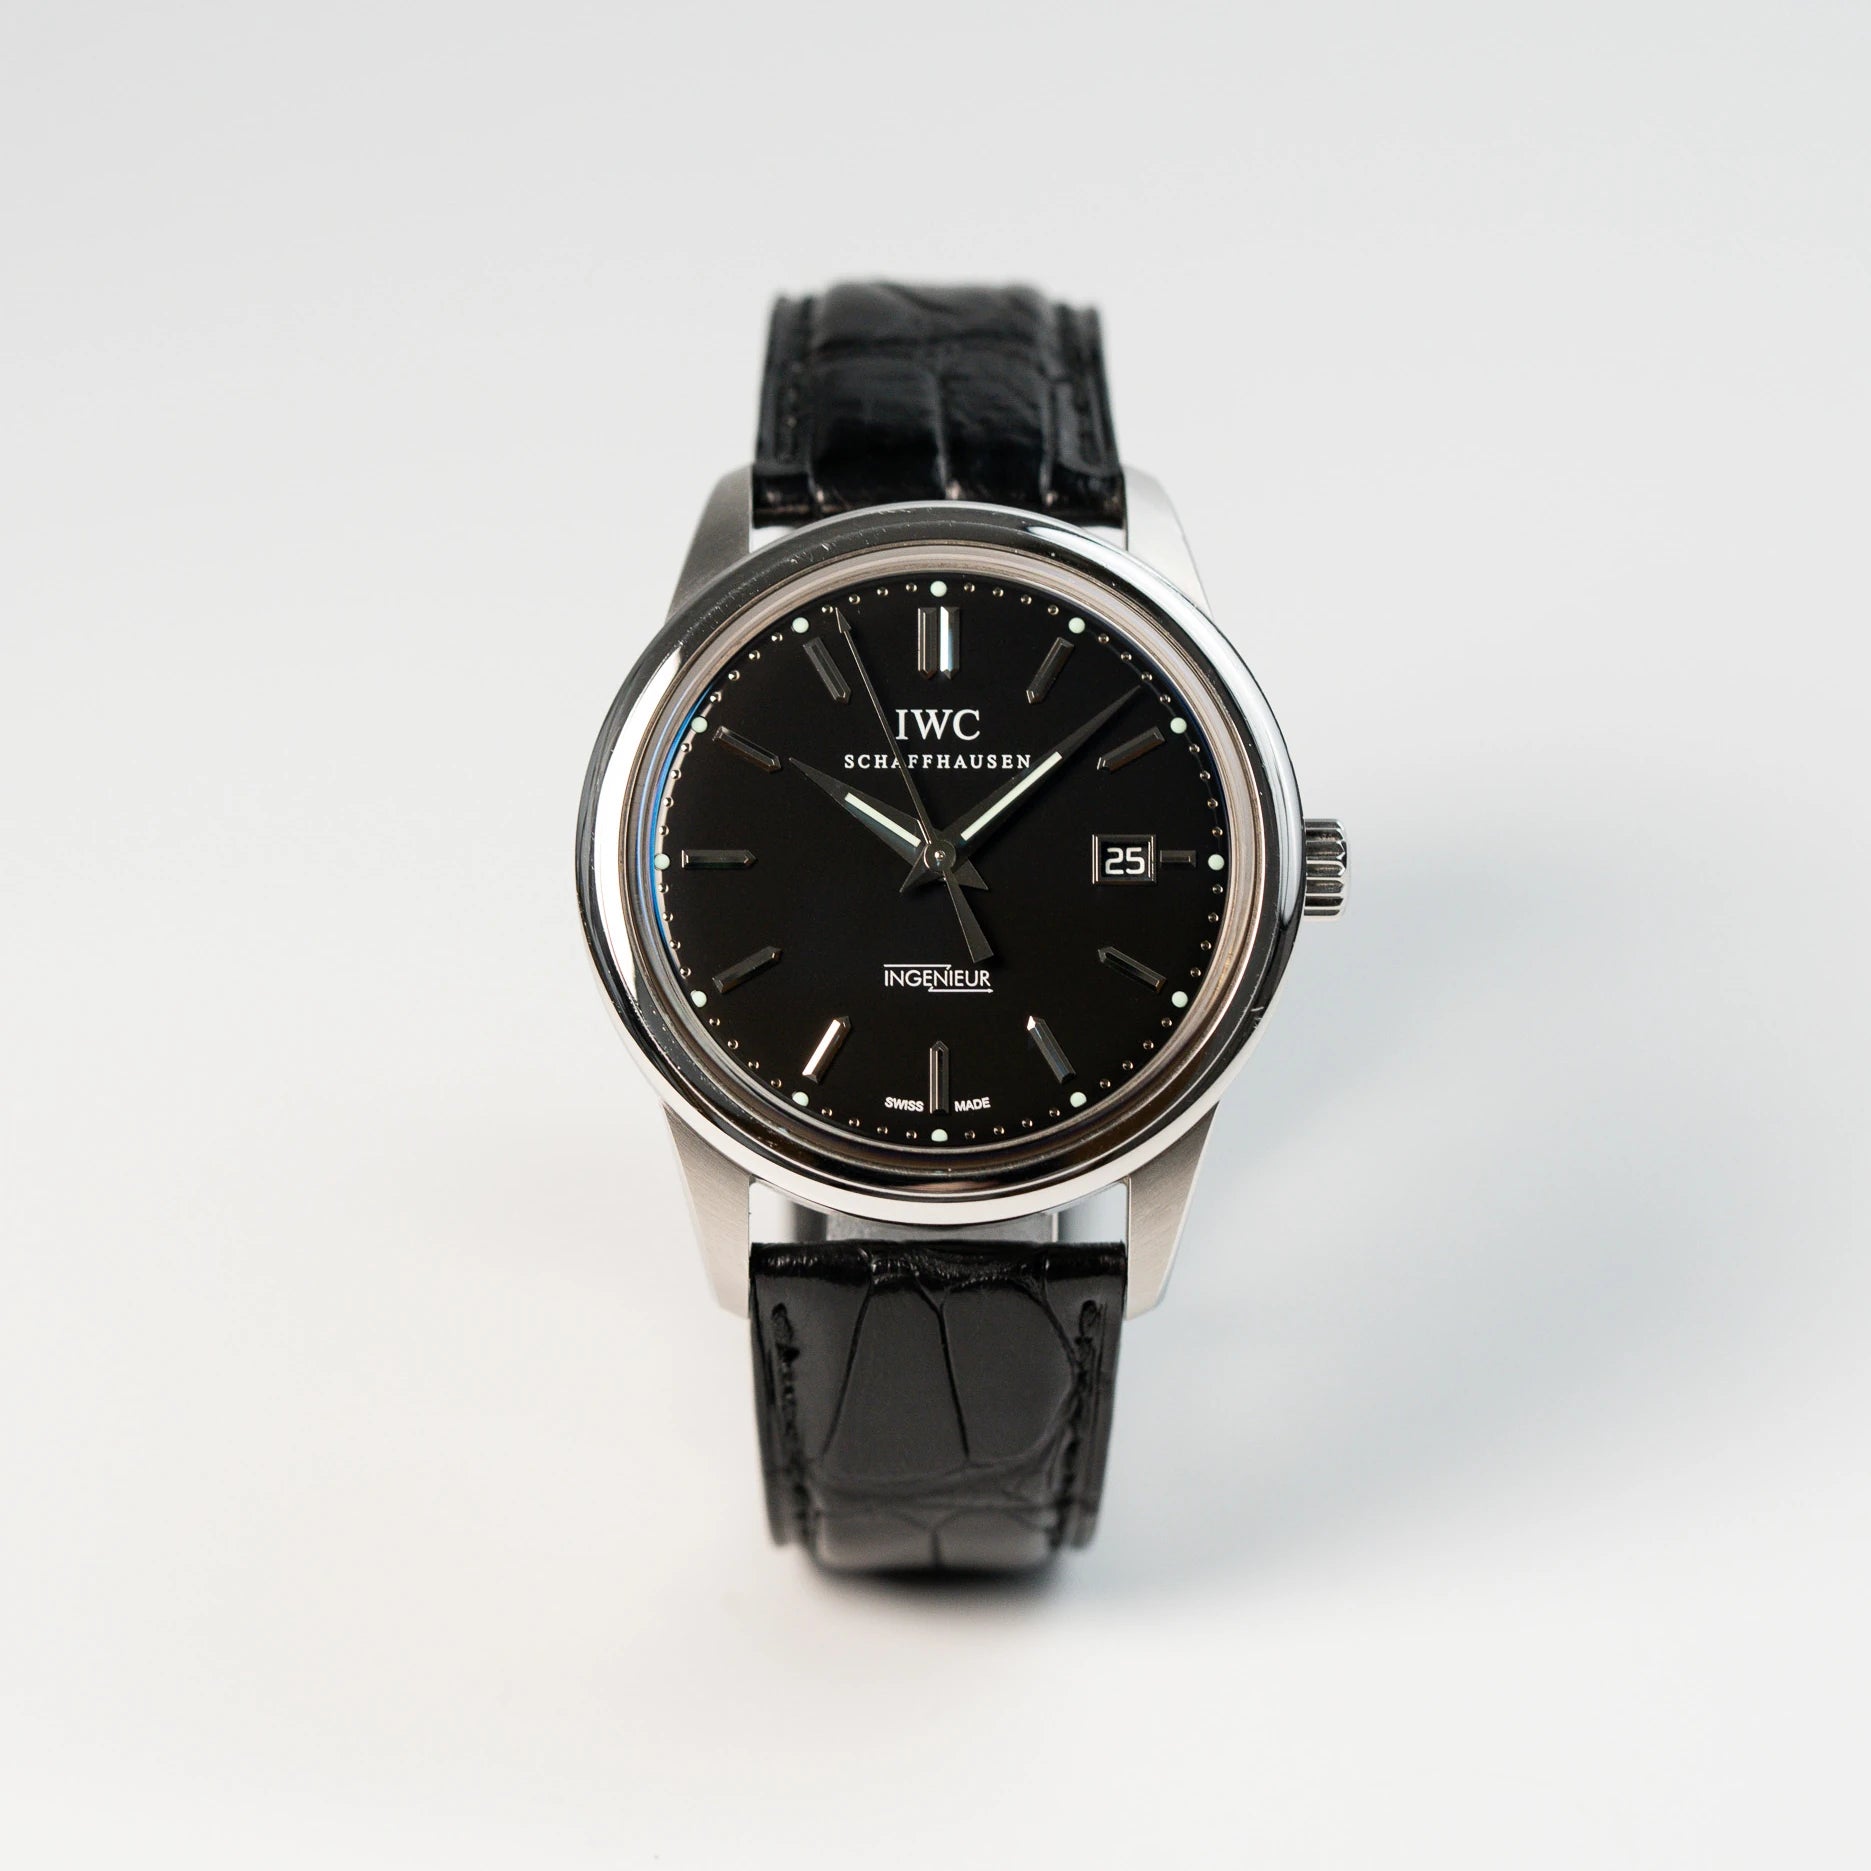 Frontale Ansicht der IWC Schaffhausen Uhr "Ingenieur" mit der Referenz IW323301 mit schwarzem Zifferblatt